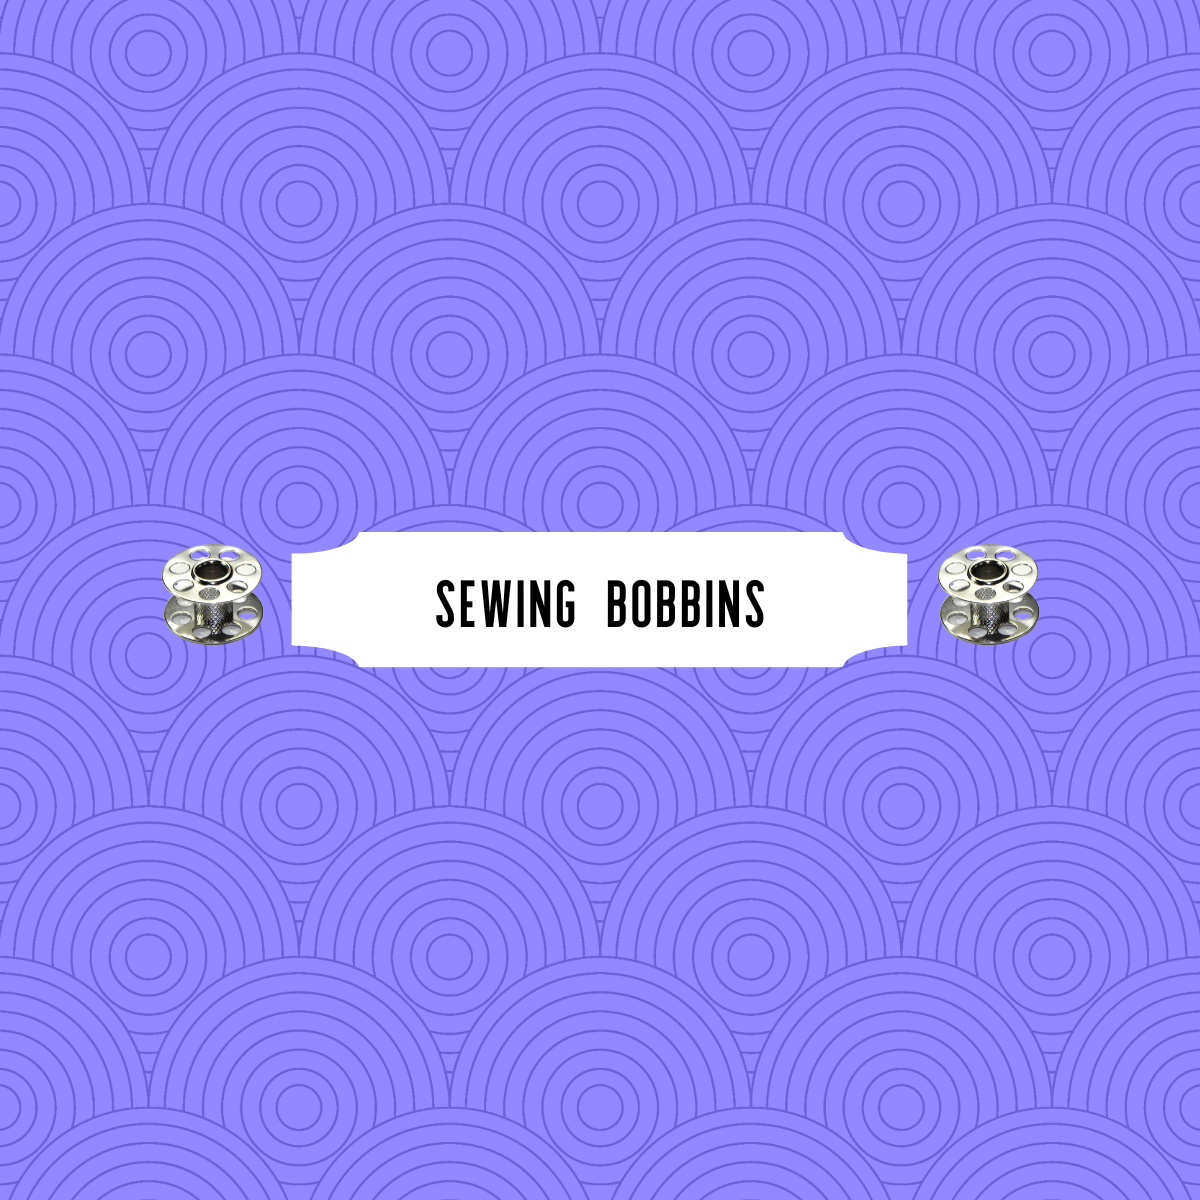 Sewing Bobbins